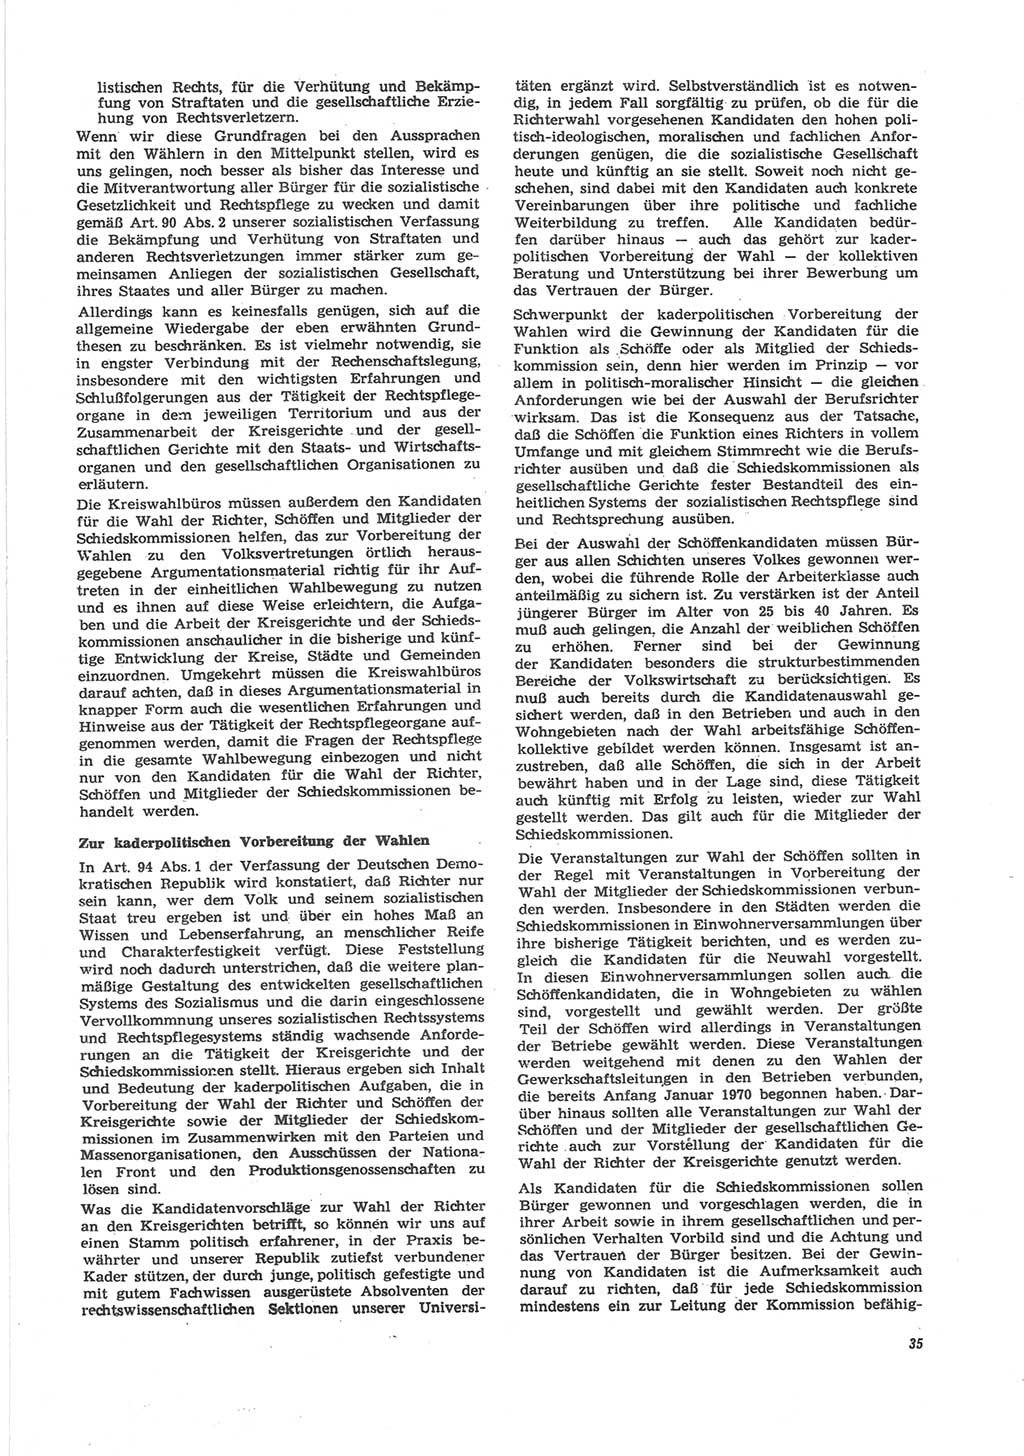 Neue Justiz (NJ), Zeitschrift für Recht und Rechtswissenschaft [Deutsche Demokratische Republik (DDR)], 24. Jahrgang 1970, Seite 35 (NJ DDR 1970, S. 35)